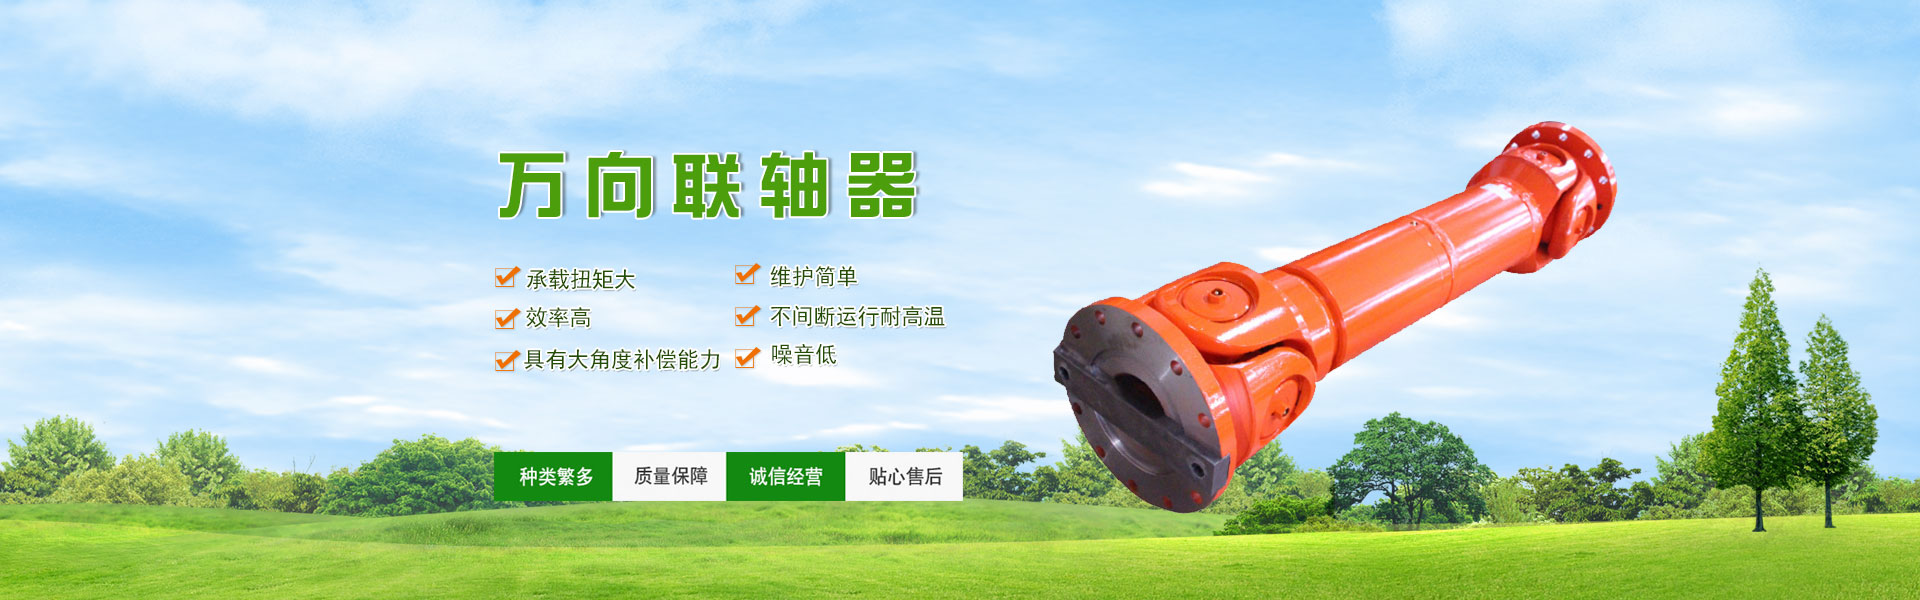 中国凸缘联轴器产业的良好形象-泊头市万盛联轴器有限公司